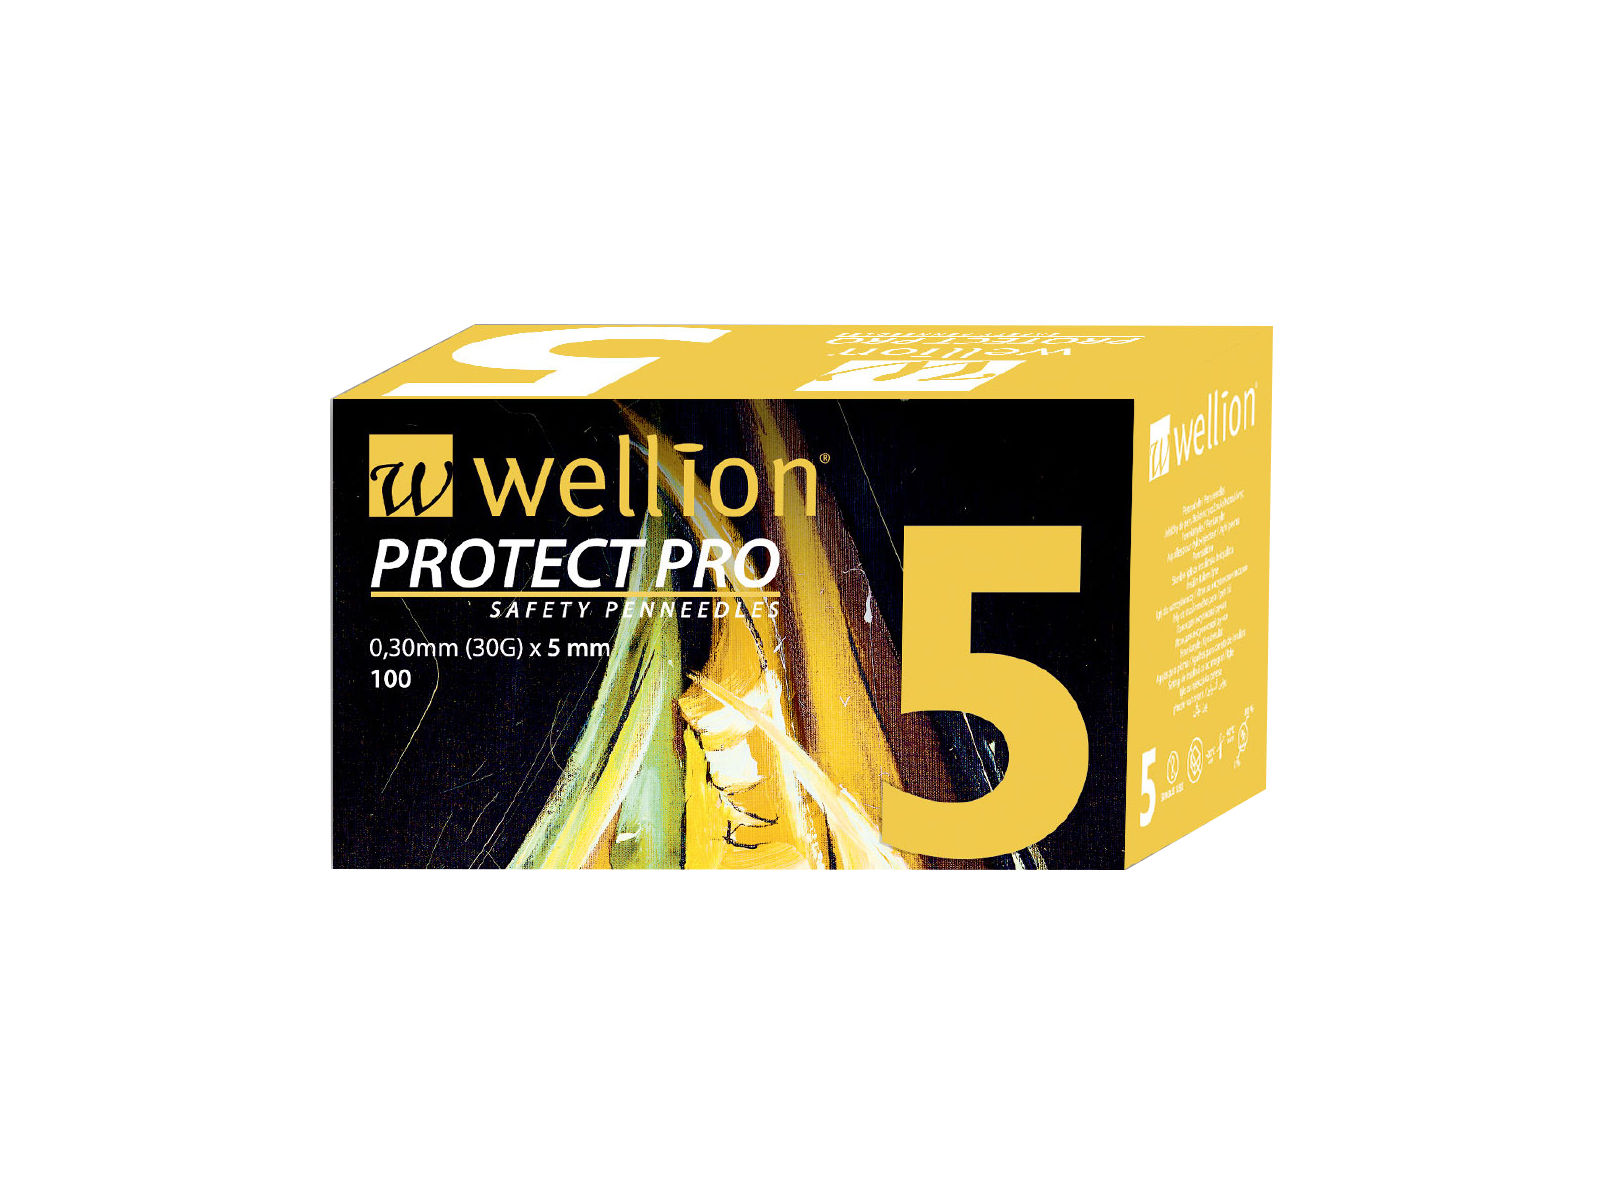 WELL125 Wellion PROTECT PRO Sicherheitspennadeln (Safety Pennadeln), 100 Stück